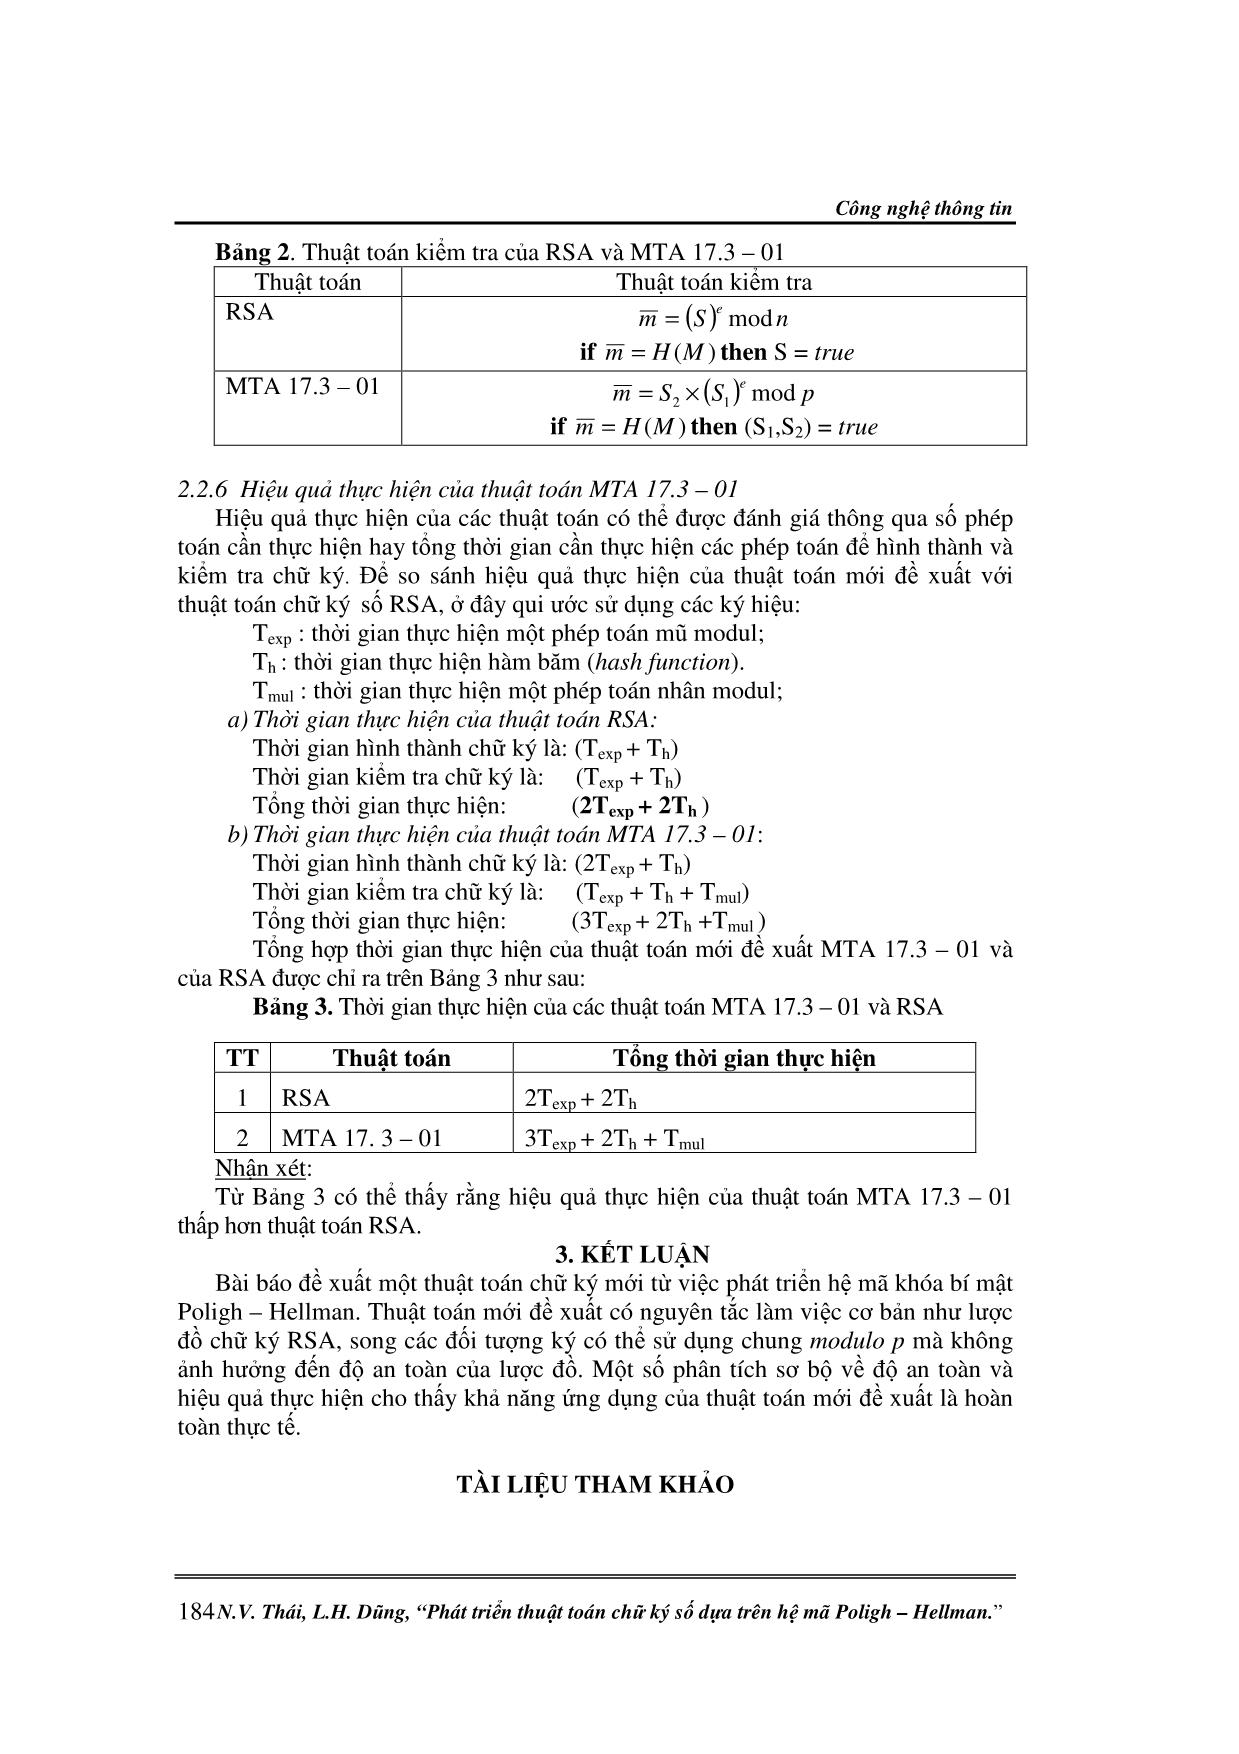 Phát triển thuật toán chữ ký số dựa trên hệ mã Poligh - Hellman trang 5